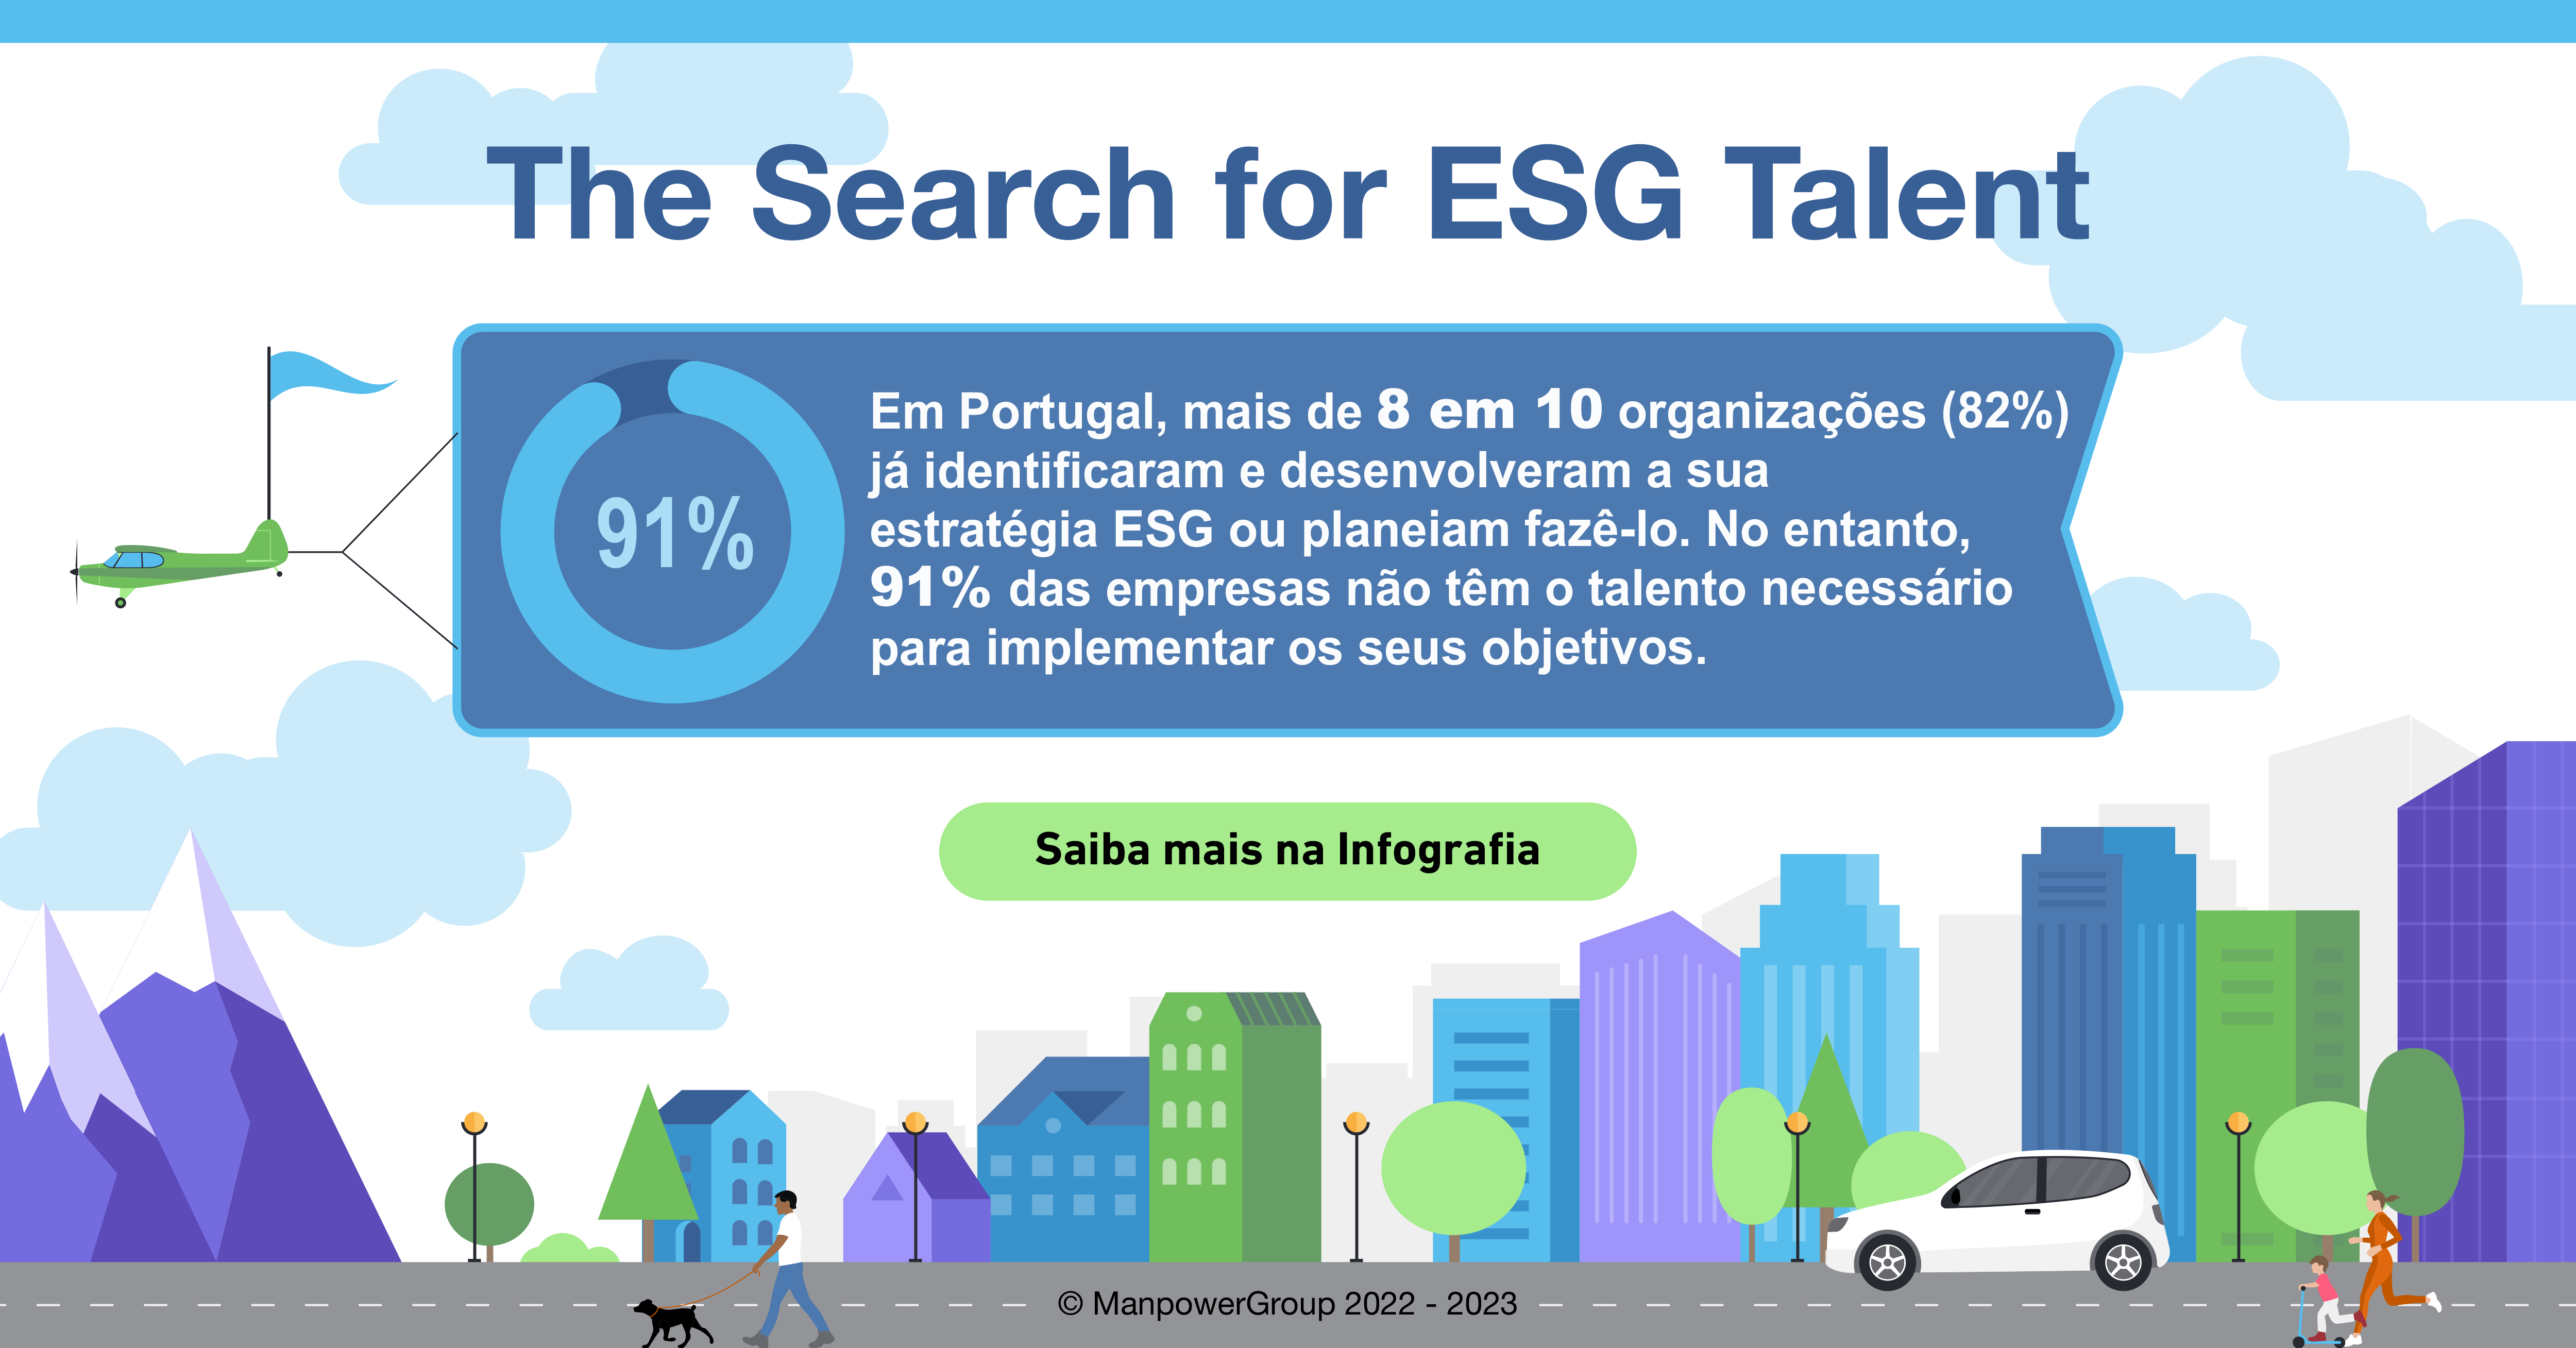 91% das empresas nacionais não tem o talento necessário para concretizar a sua estratégia de ESG